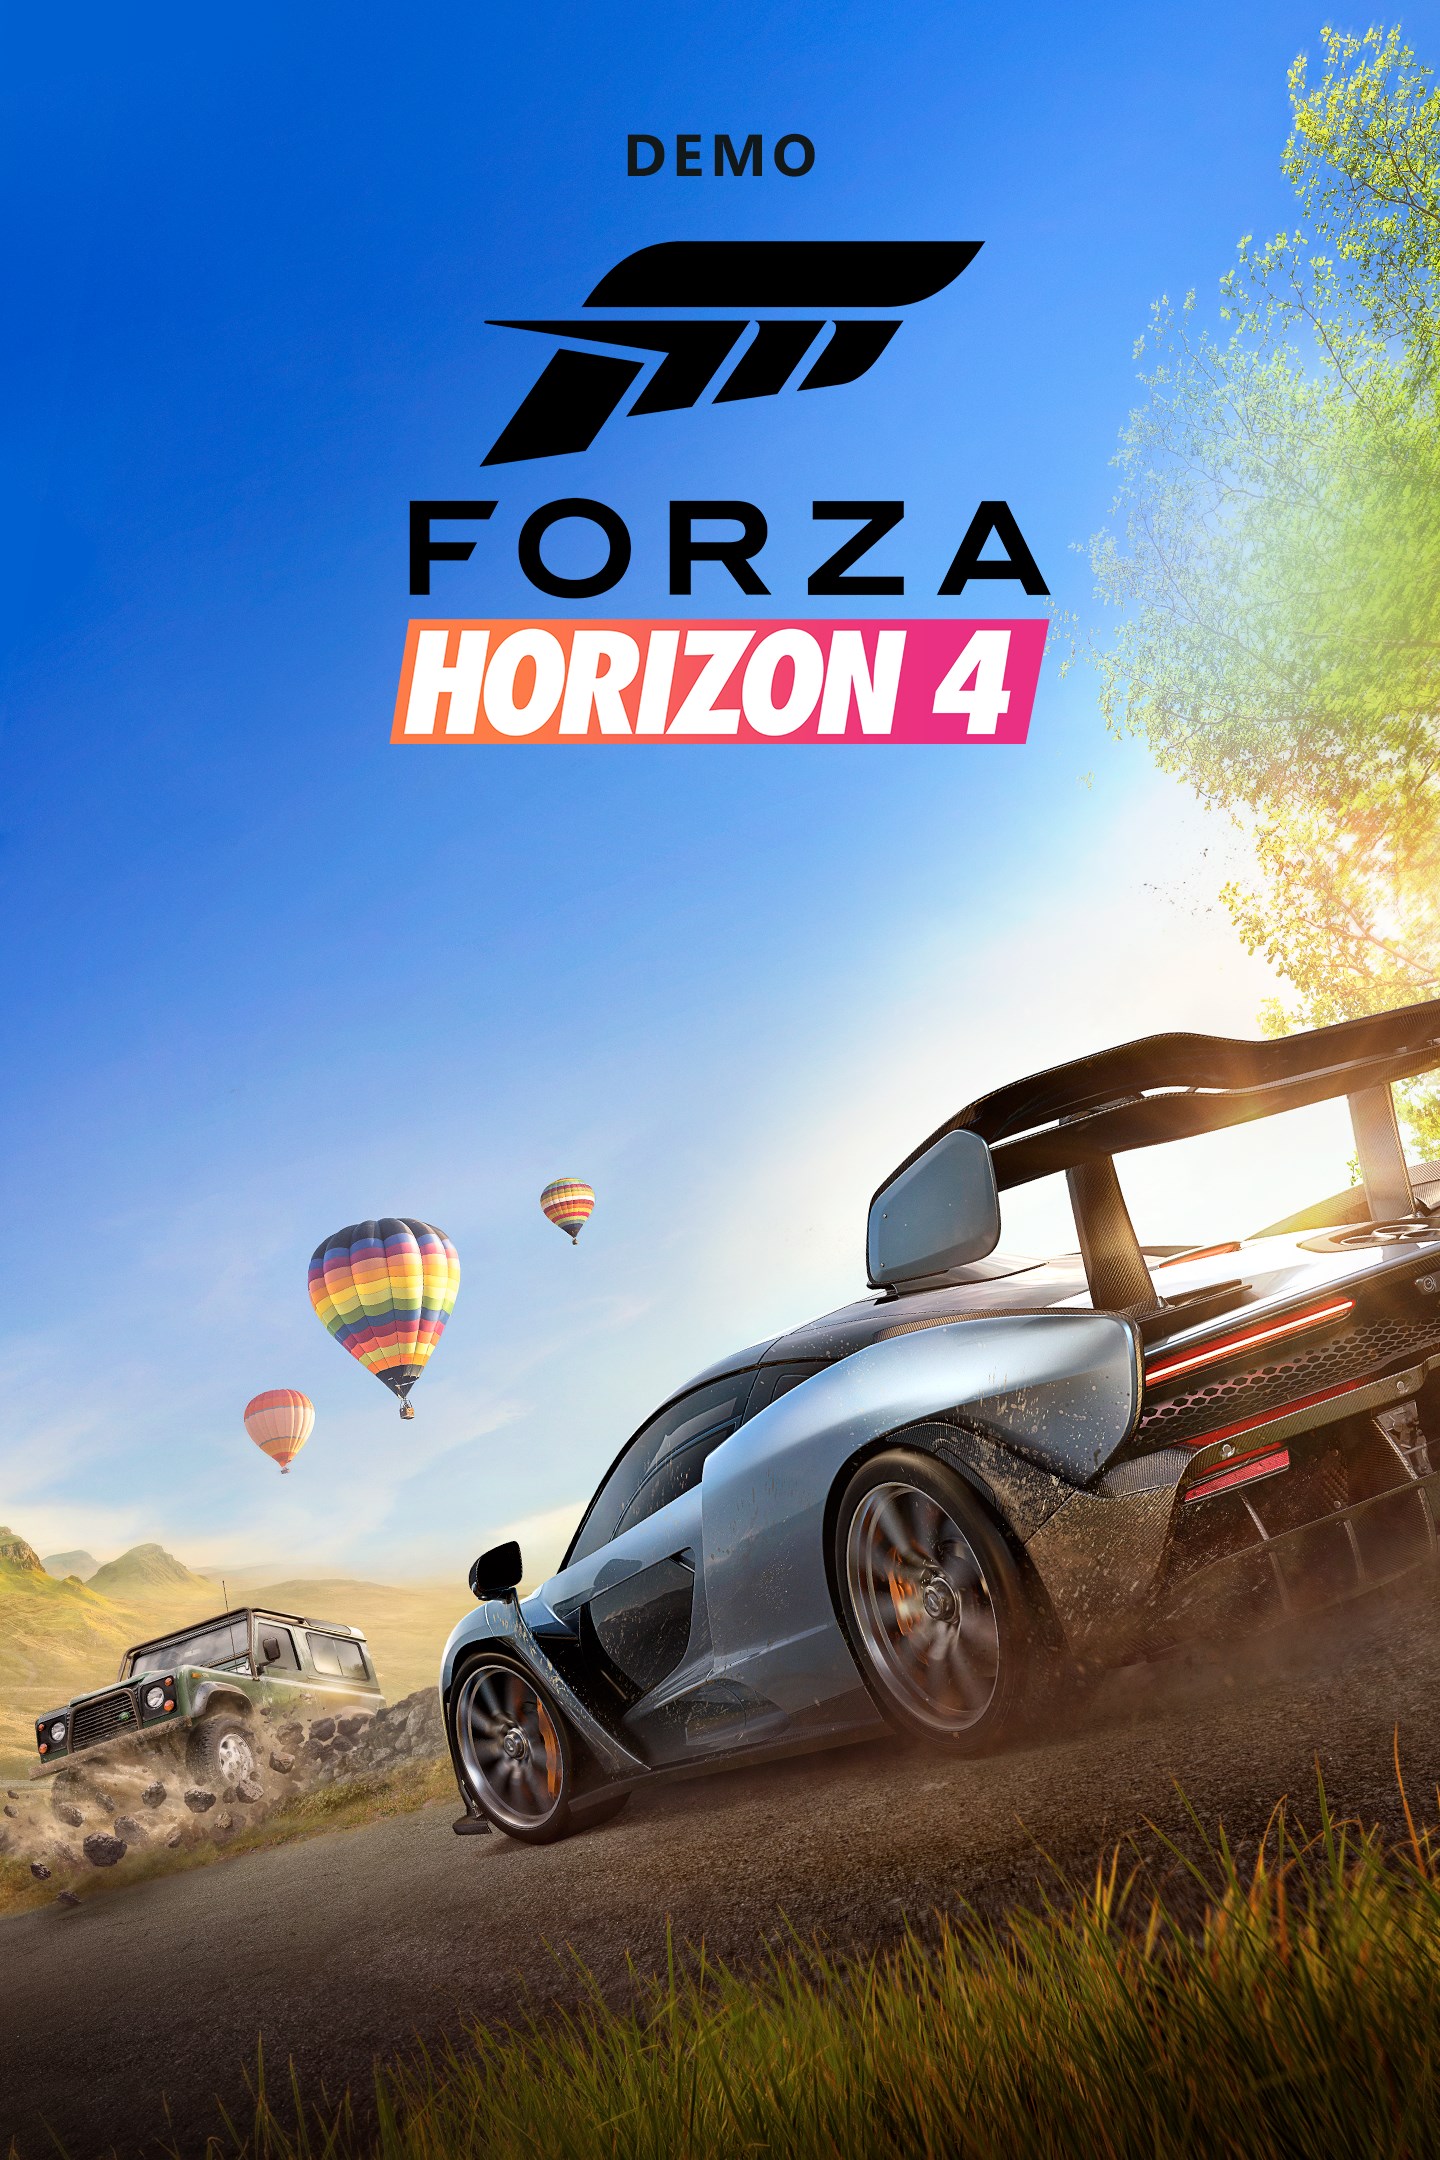 jaquette reduite de Forza Horizon 4 sur PC